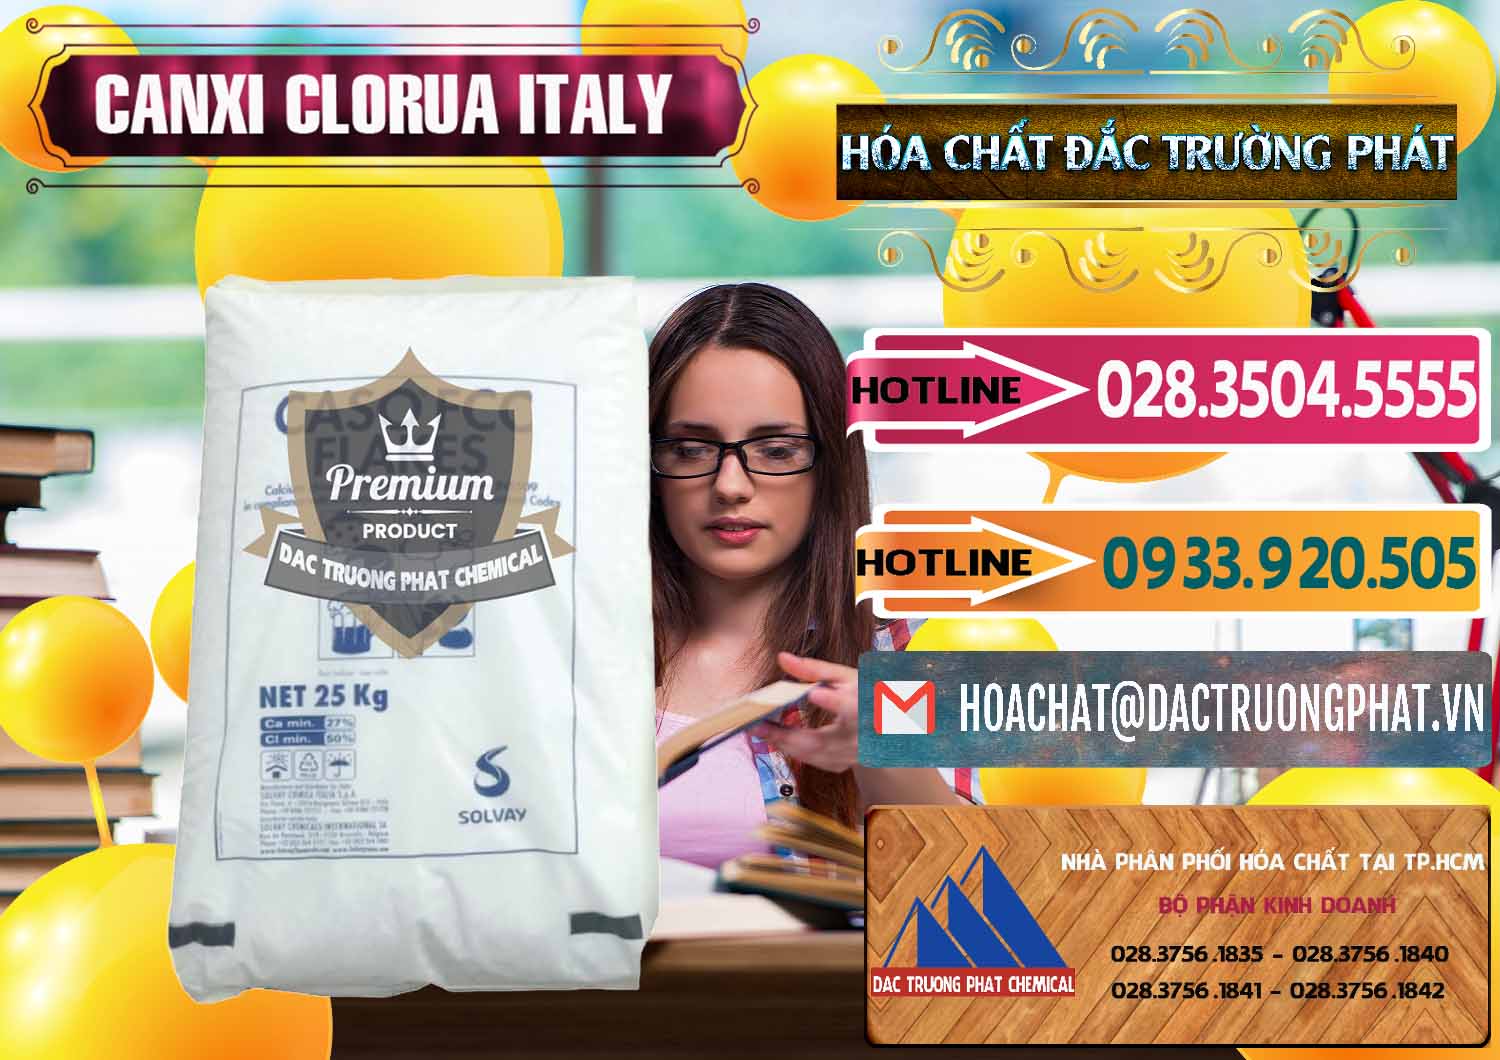 Đơn vị chuyên nhập khẩu - bán CaCl2 – Canxi Clorua Food Grade Ý Italy - 0435 - Cty phân phối & nhập khẩu hóa chất tại TP.HCM - dactruongphat.vn